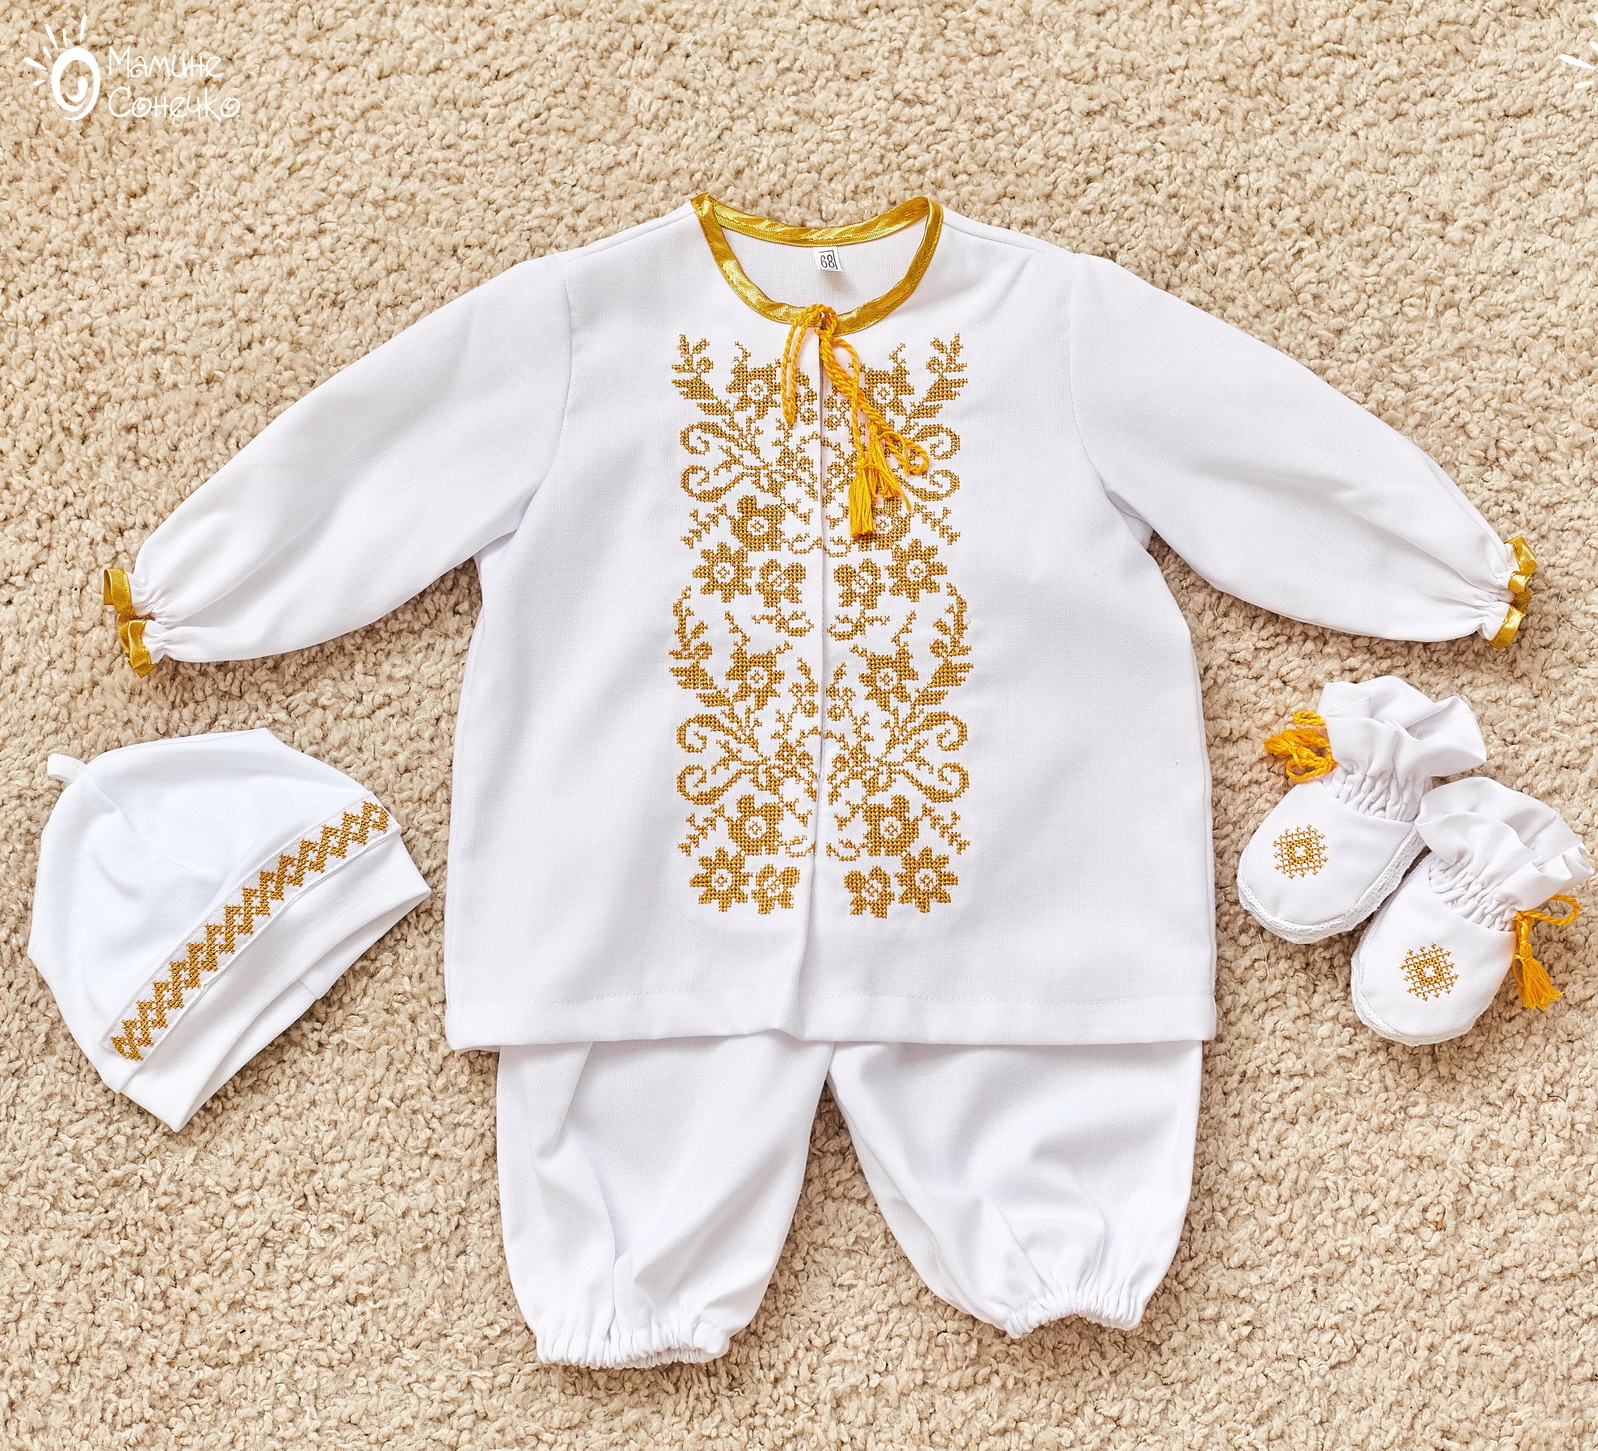 Boy’s baptismal suit “Monochrome flowers gold”, linen